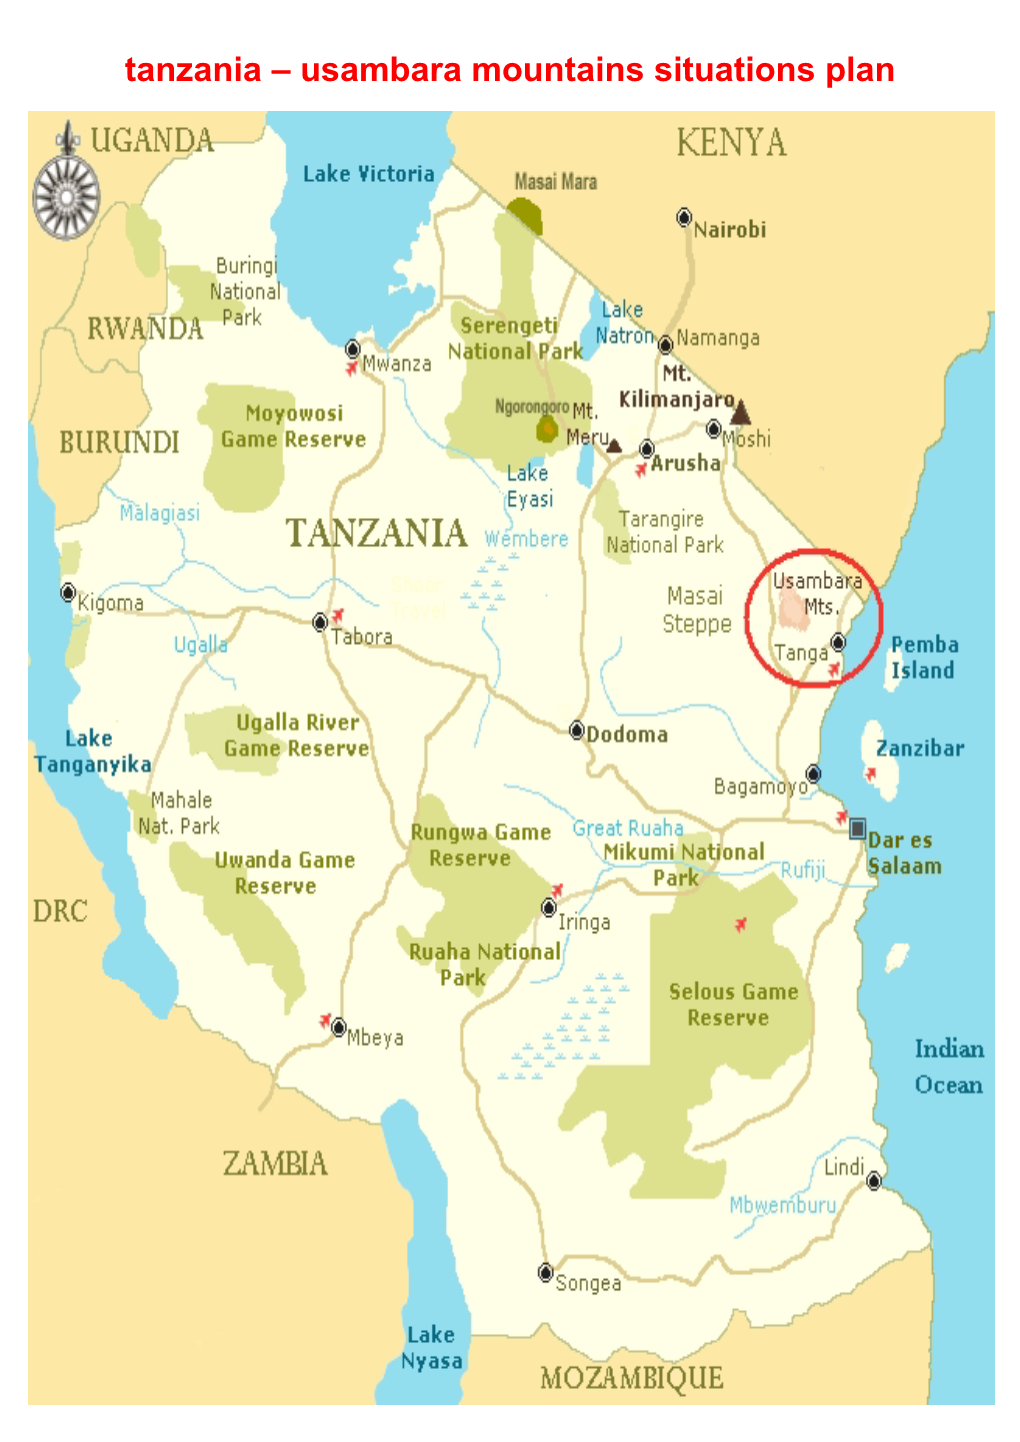 Tanzania – Usambara Mountains Situations Plan